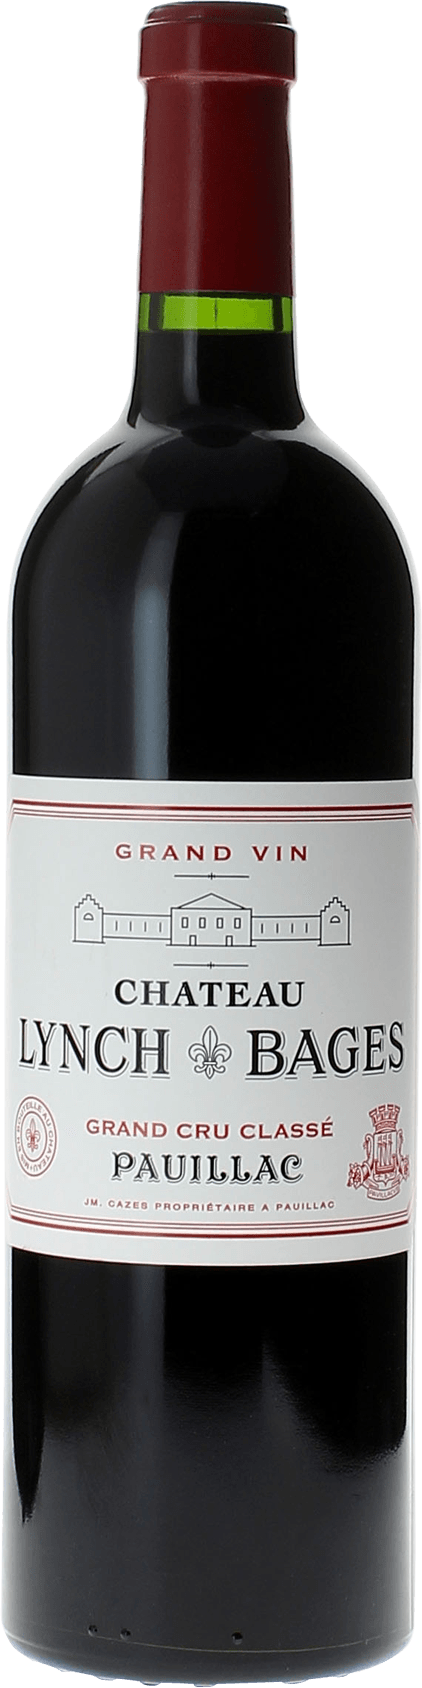 Lynch bages 1999 5 me Grand cru class Pauillac, Bordeaux rouge